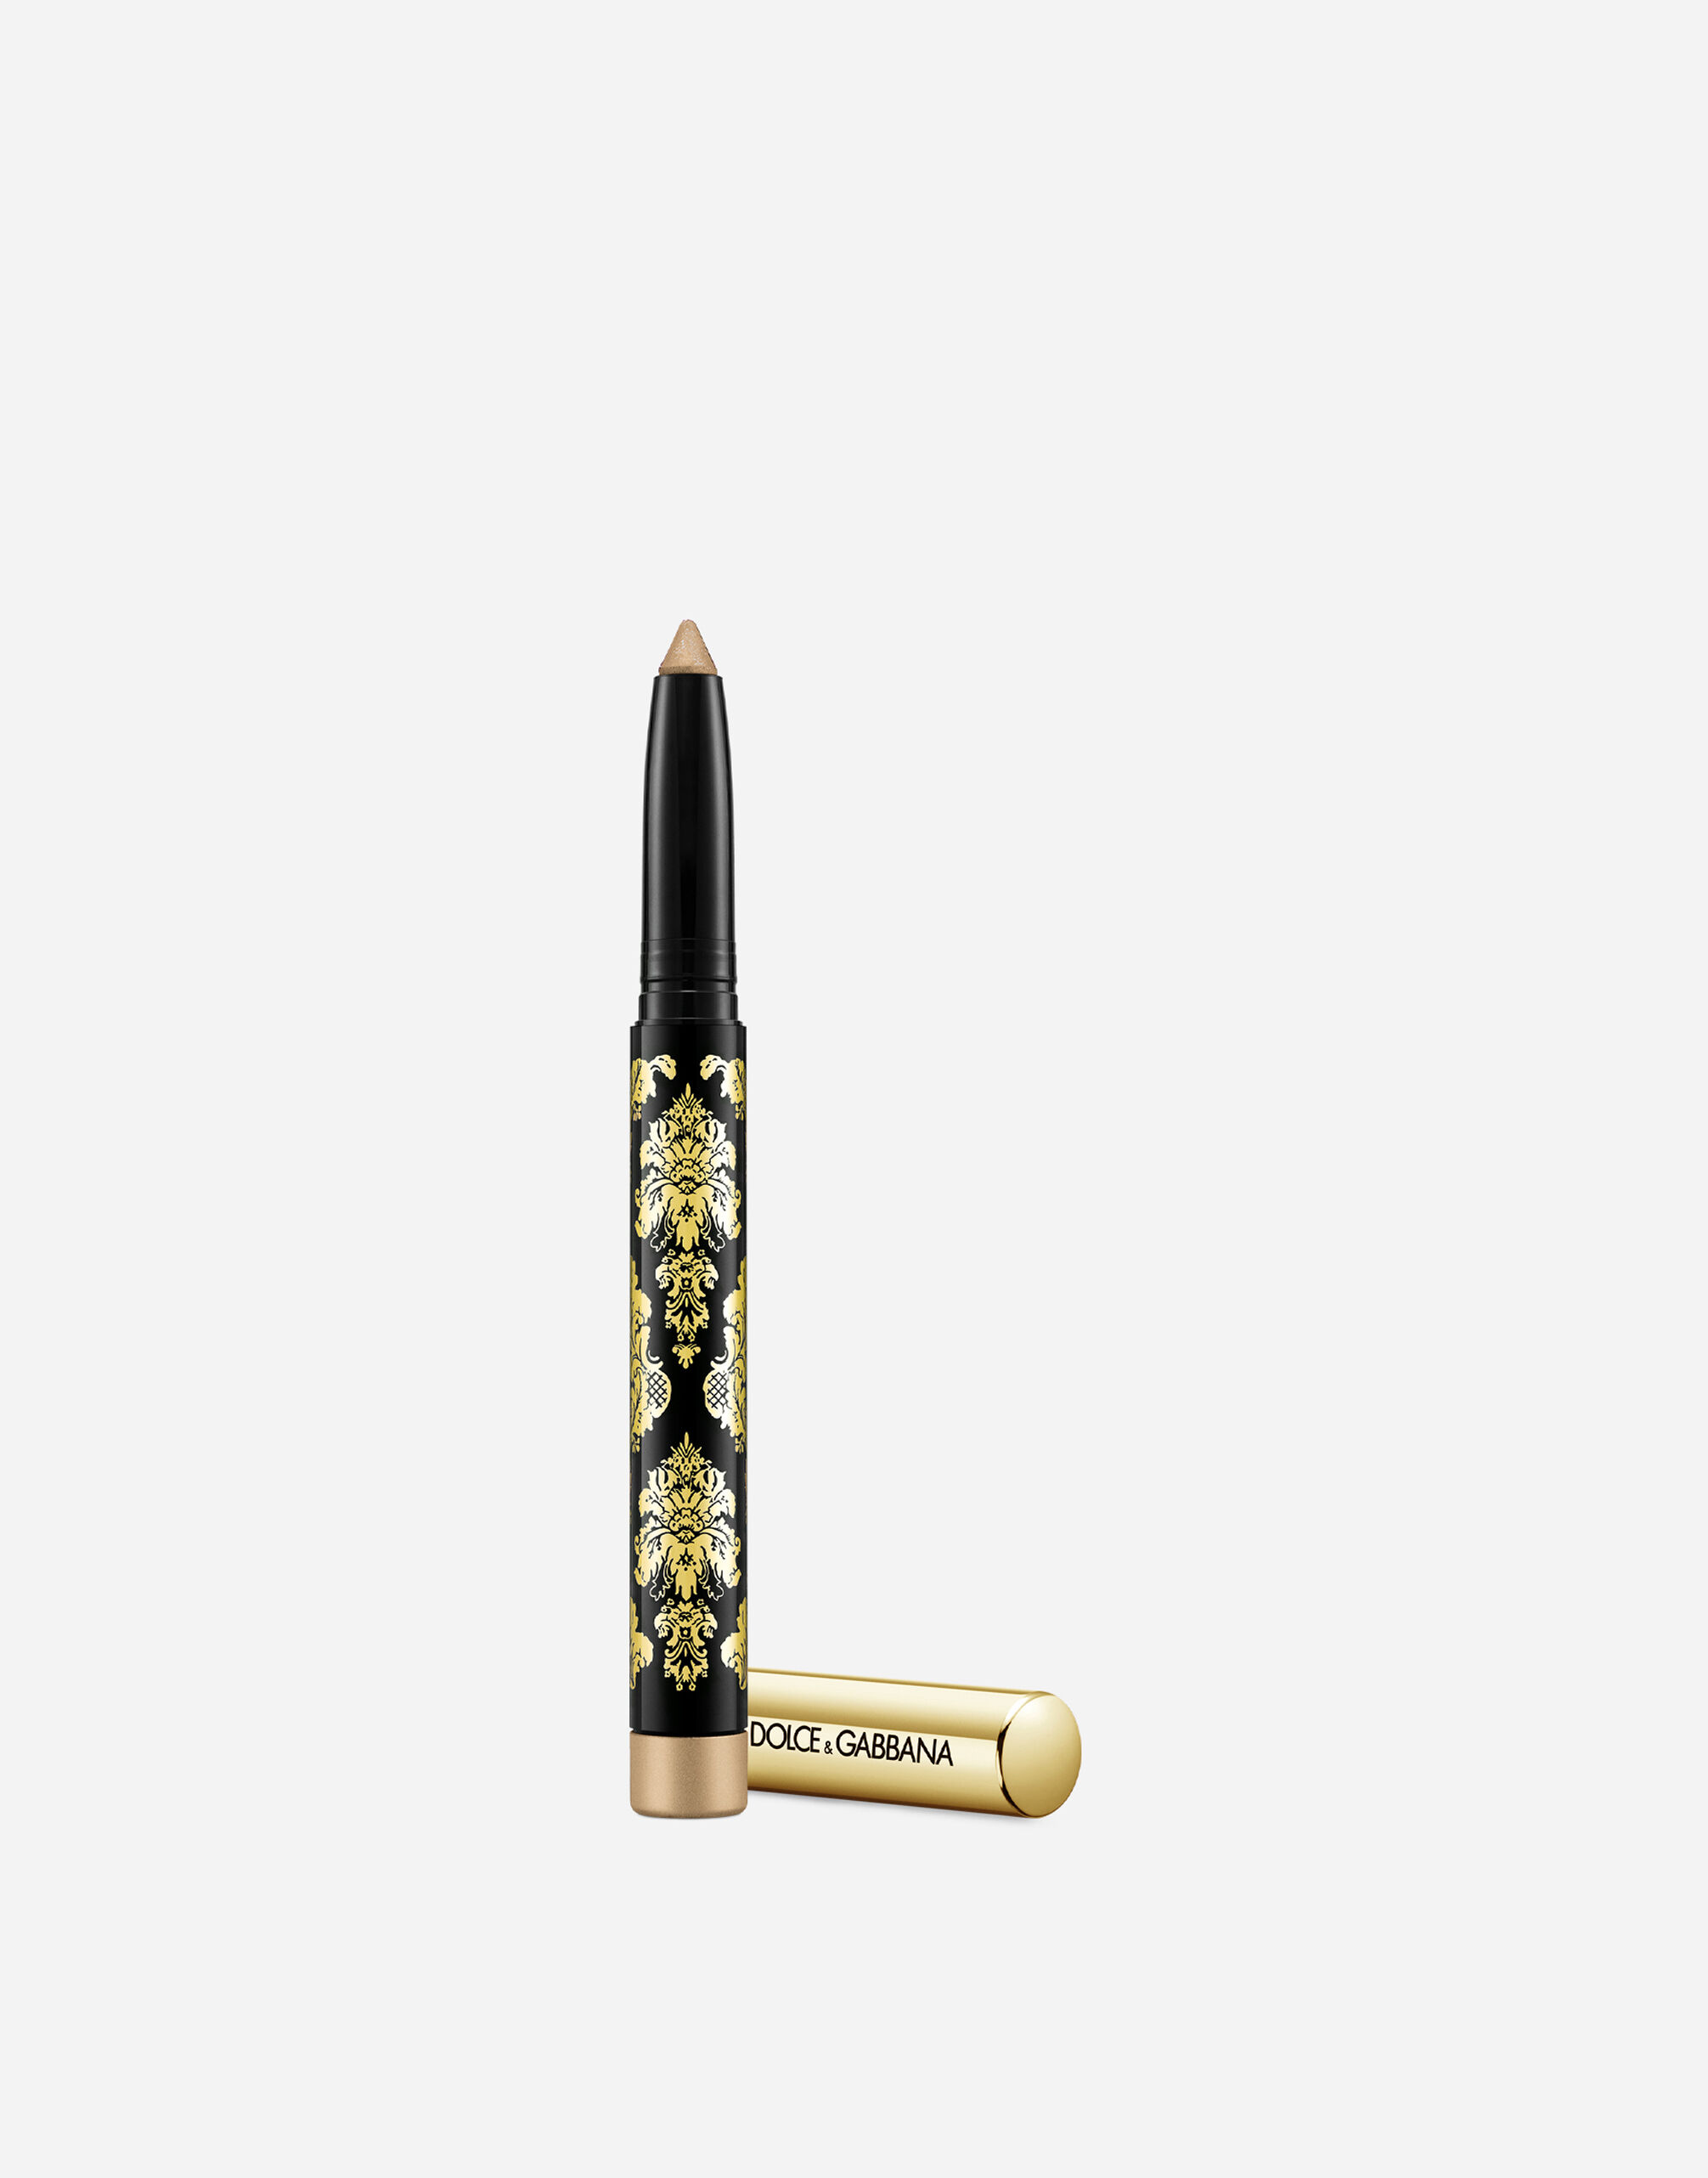 Тени-карандаш для глаз Dolce & Gabbana Intenseyes кремовые, №5 Taupe, 1,4 г карандаш водостойкий для глаз posh 18 часов устойчивости тон е104 горчичный